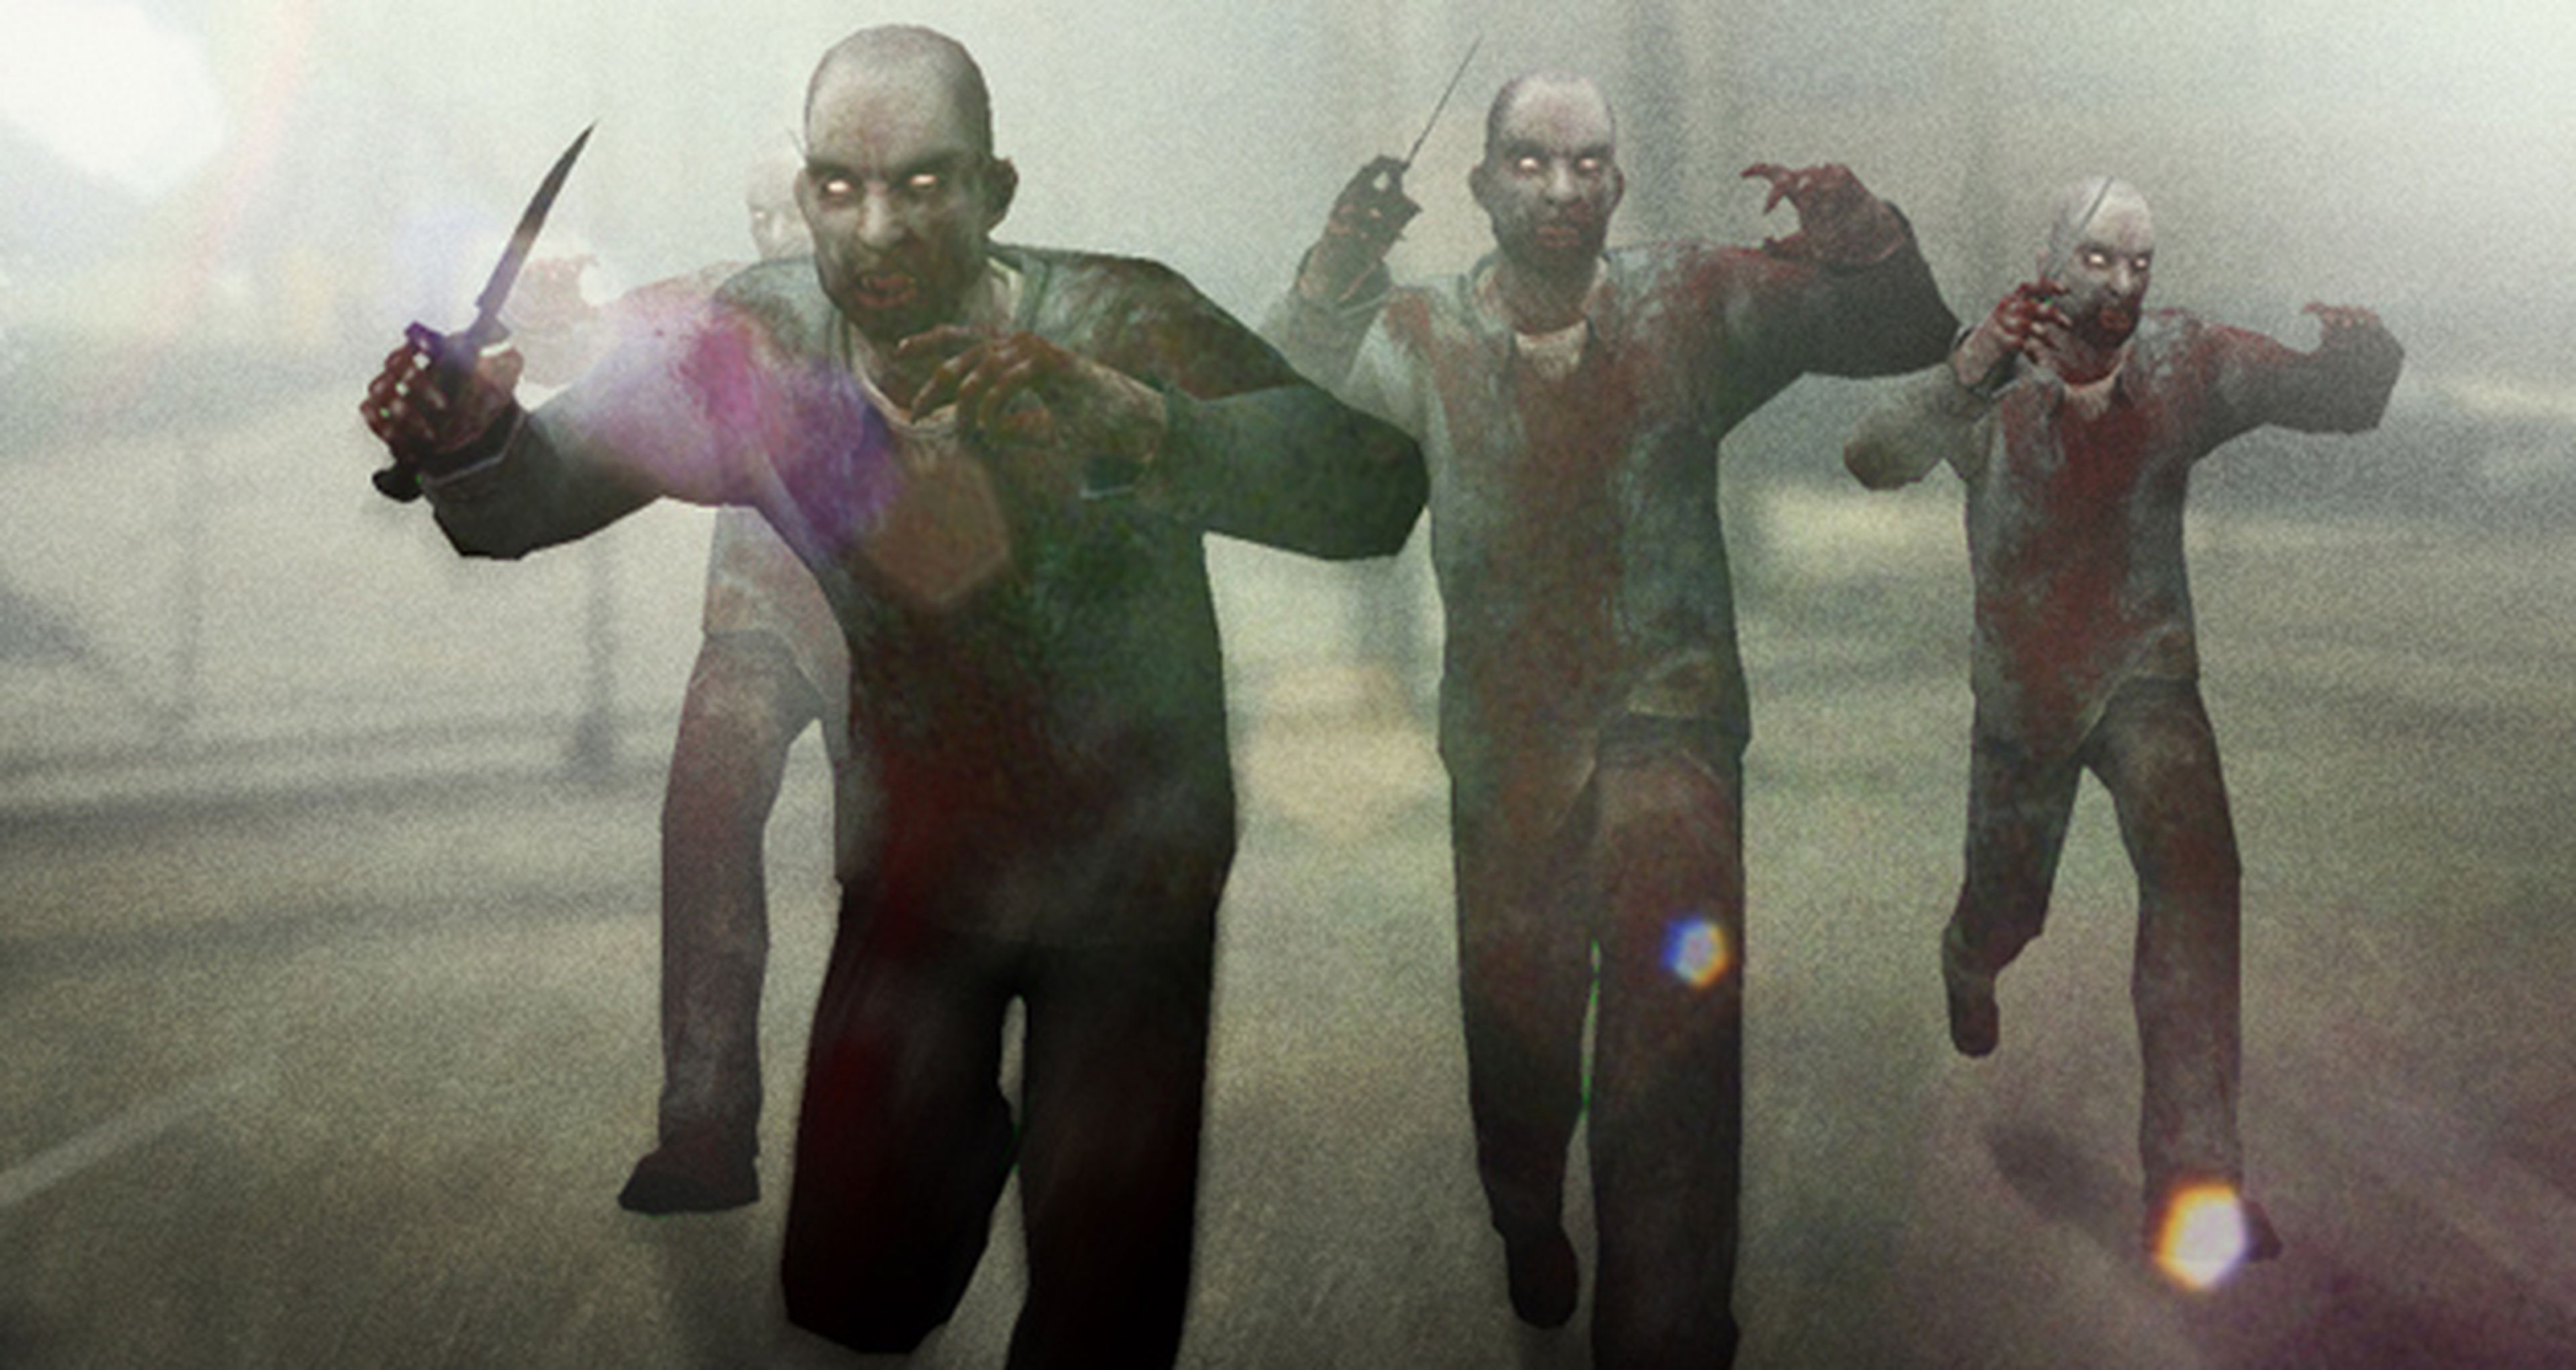 GAMESCOM: invasión zombie en CS GO